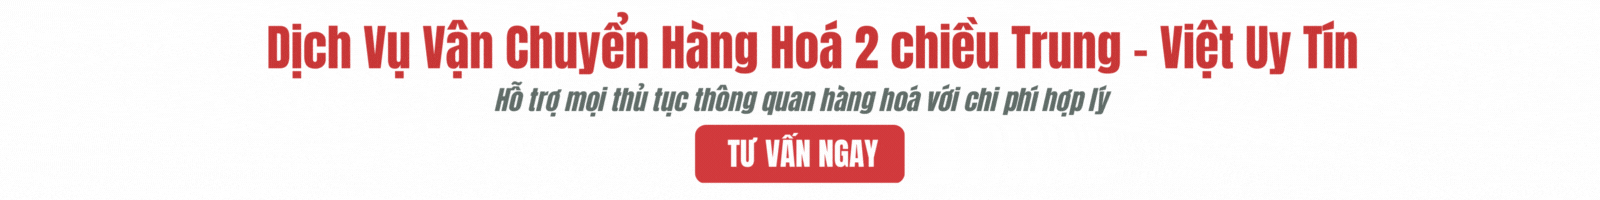 Dịch vụ vận chuyển hàng hóa Việt Trung tại Giang Huy